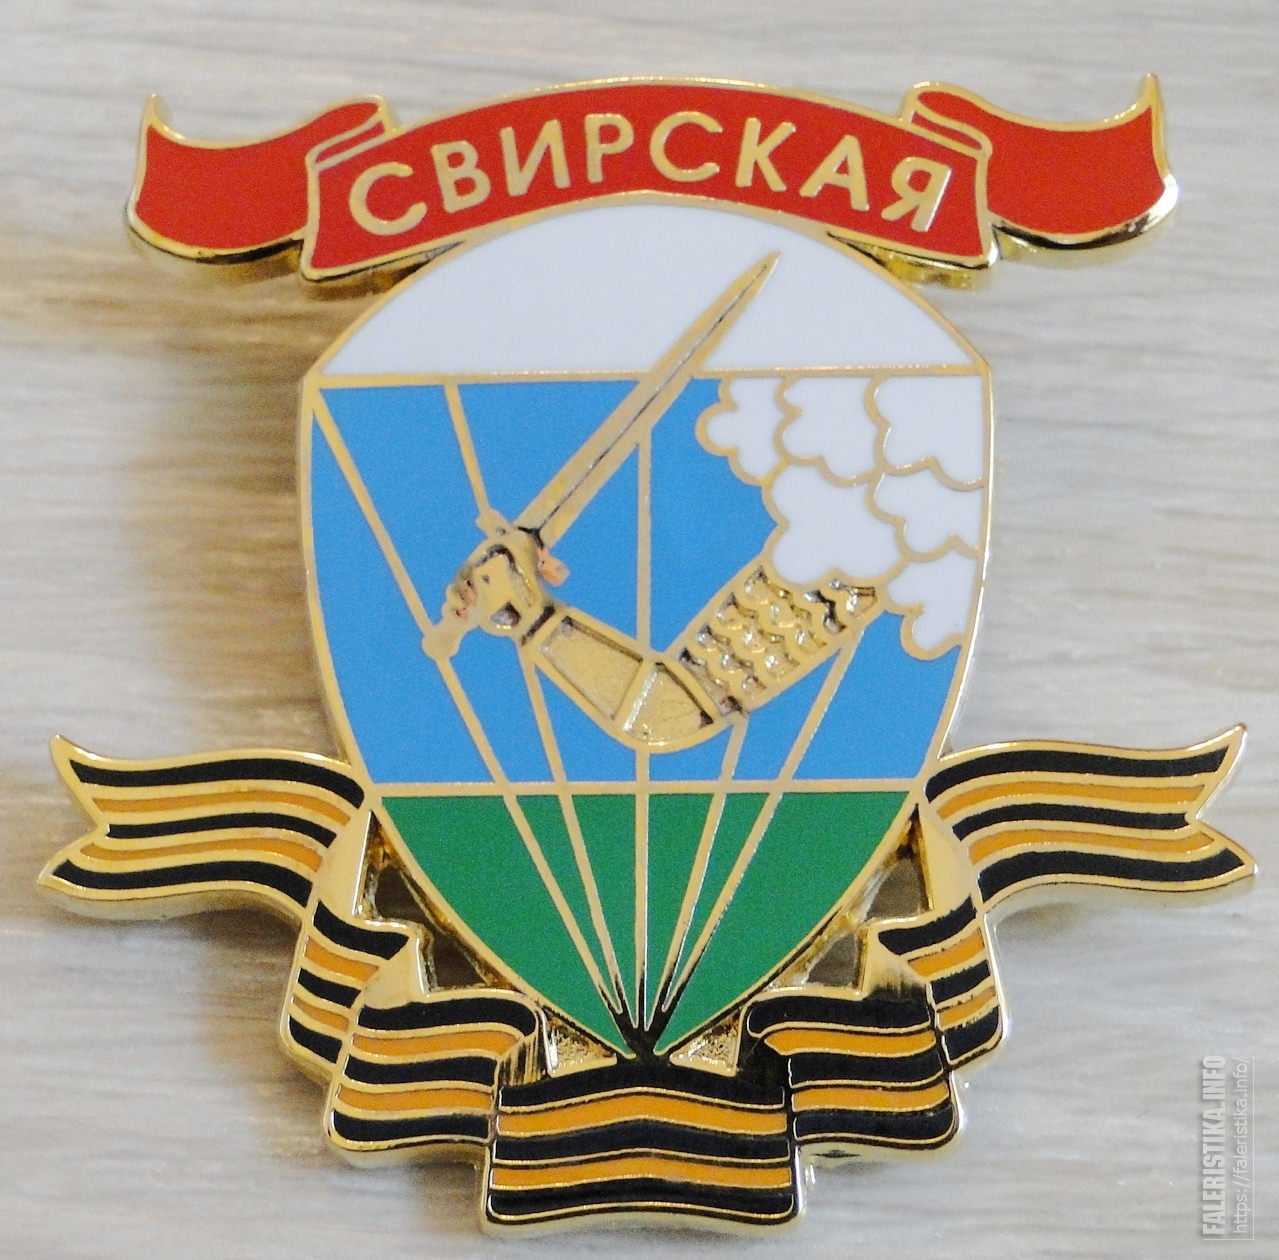 98 Свирская дивизия ВДВ